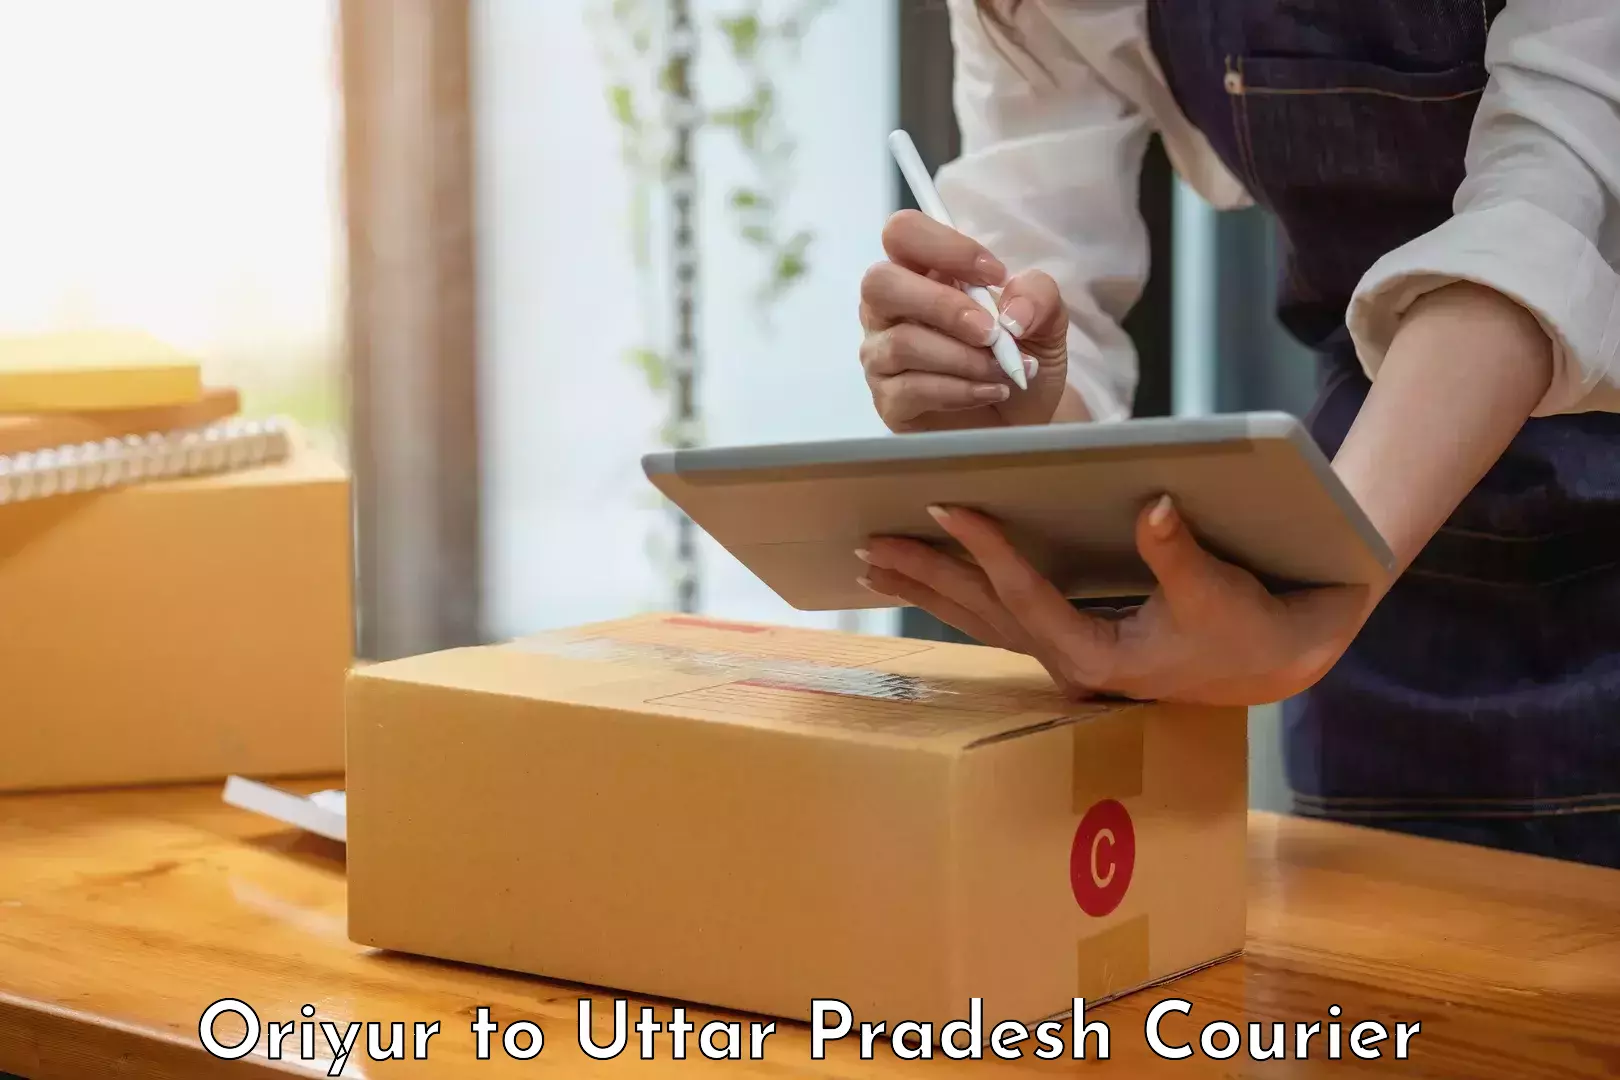 Modern courier technology Oriyur to Bijpur